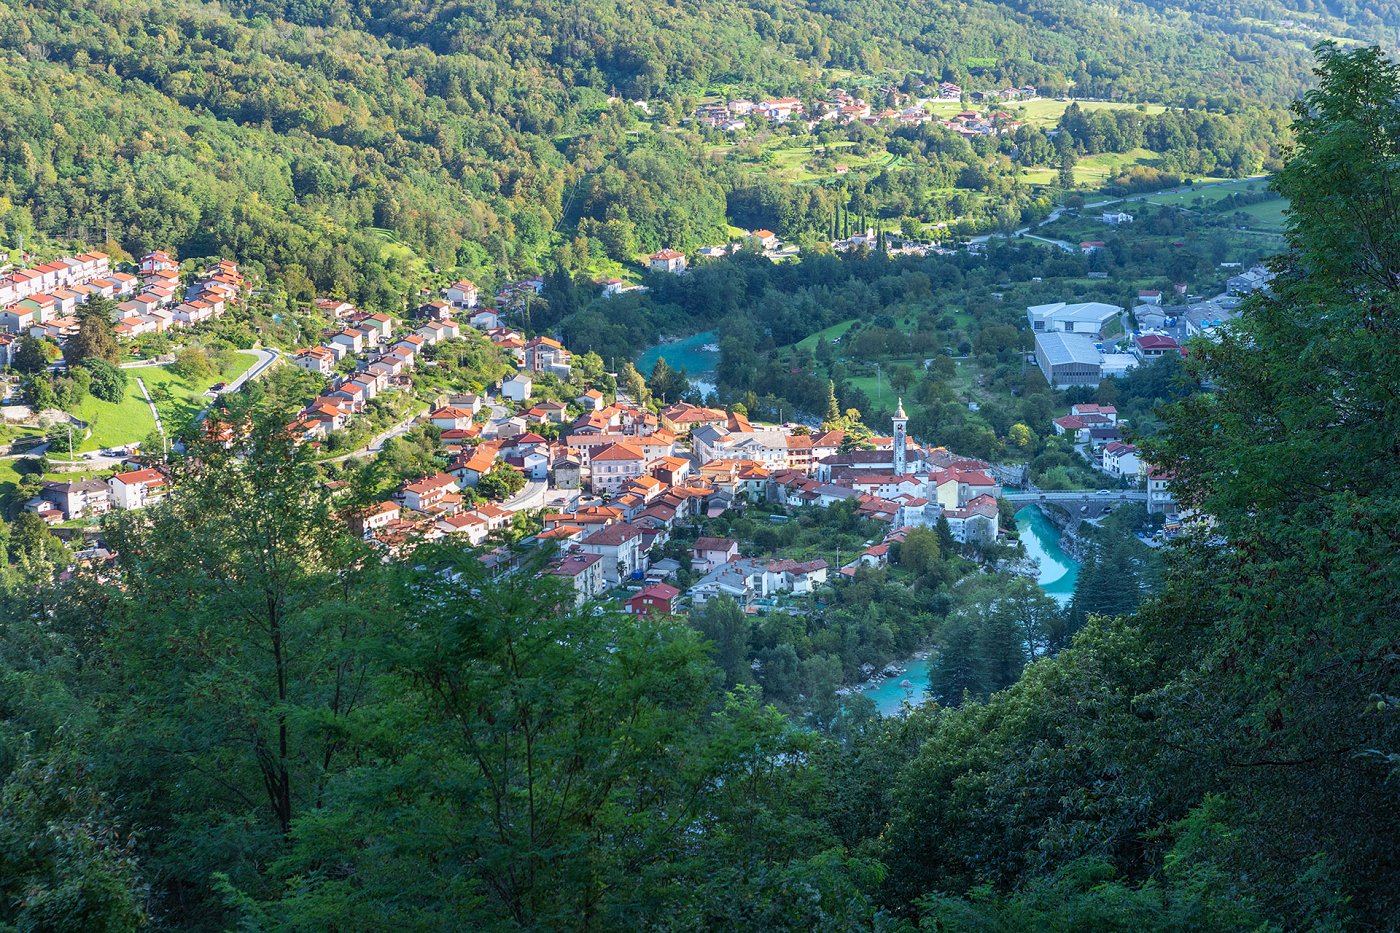 Vista sulla città di Kanal, oltre la quale scorre il fiume Isonzo